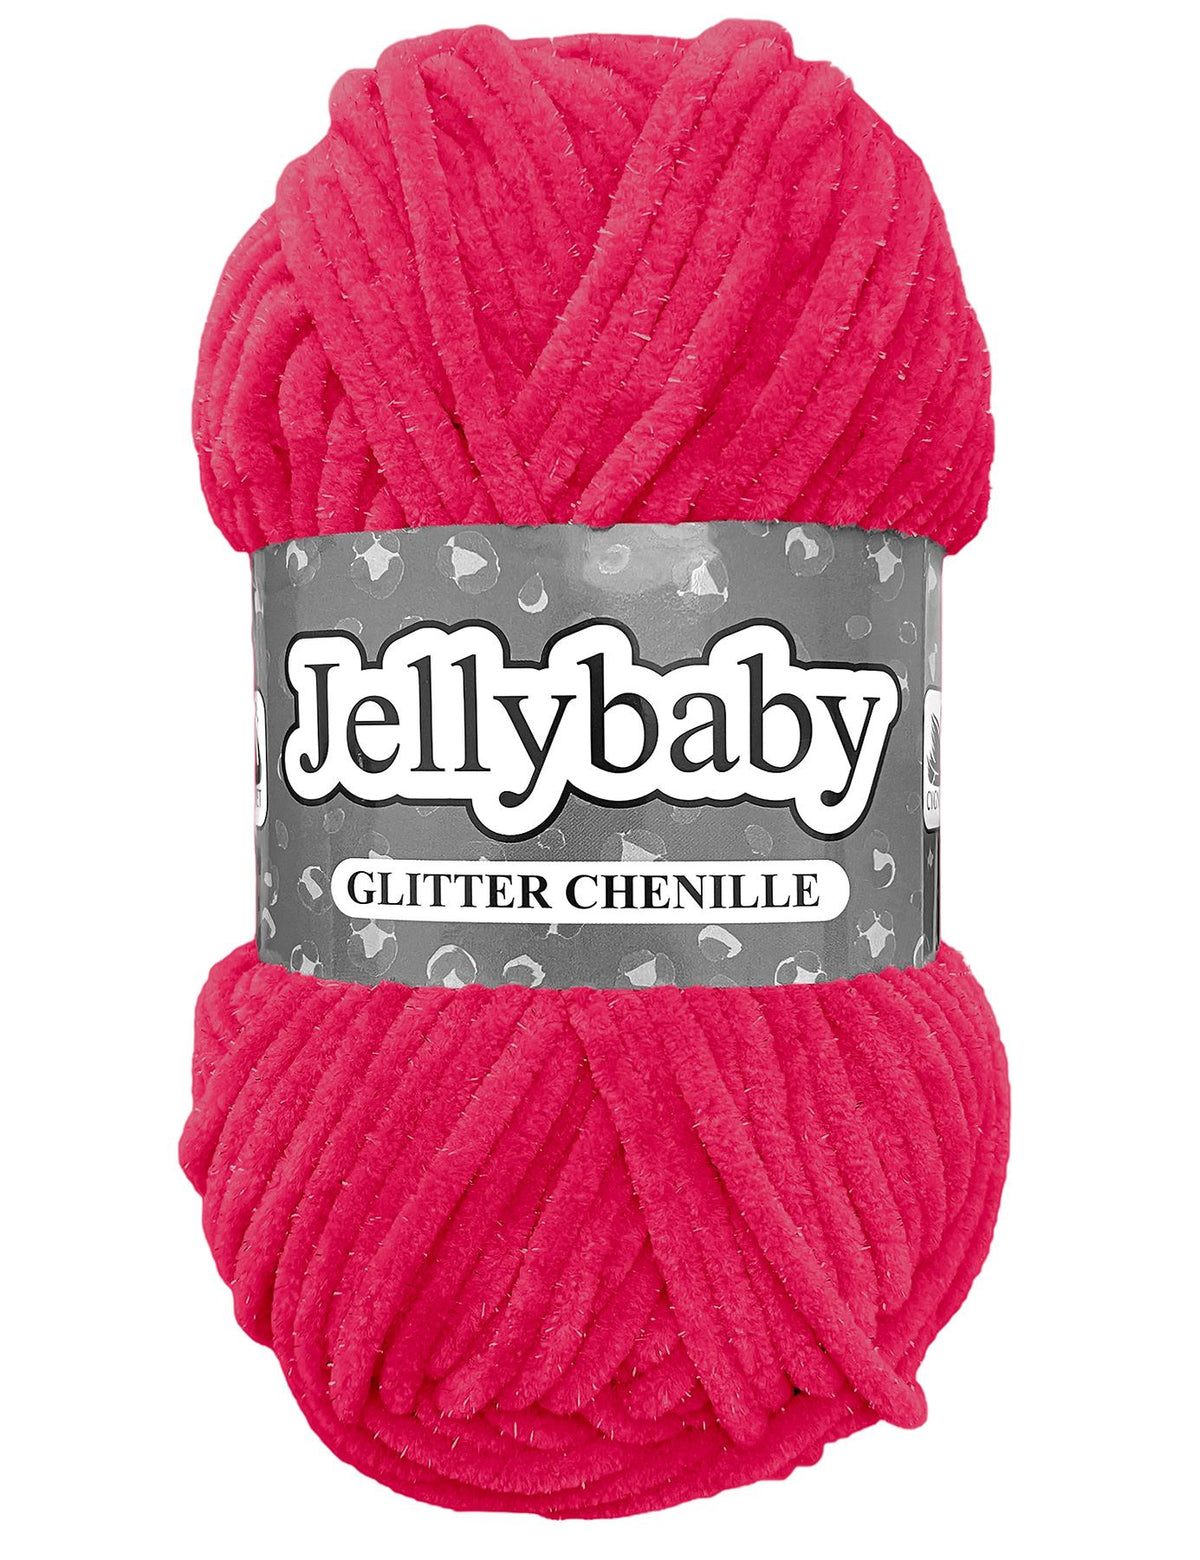 Cygnet Jellybaby Glitter Chenille Partypop (015) -100g